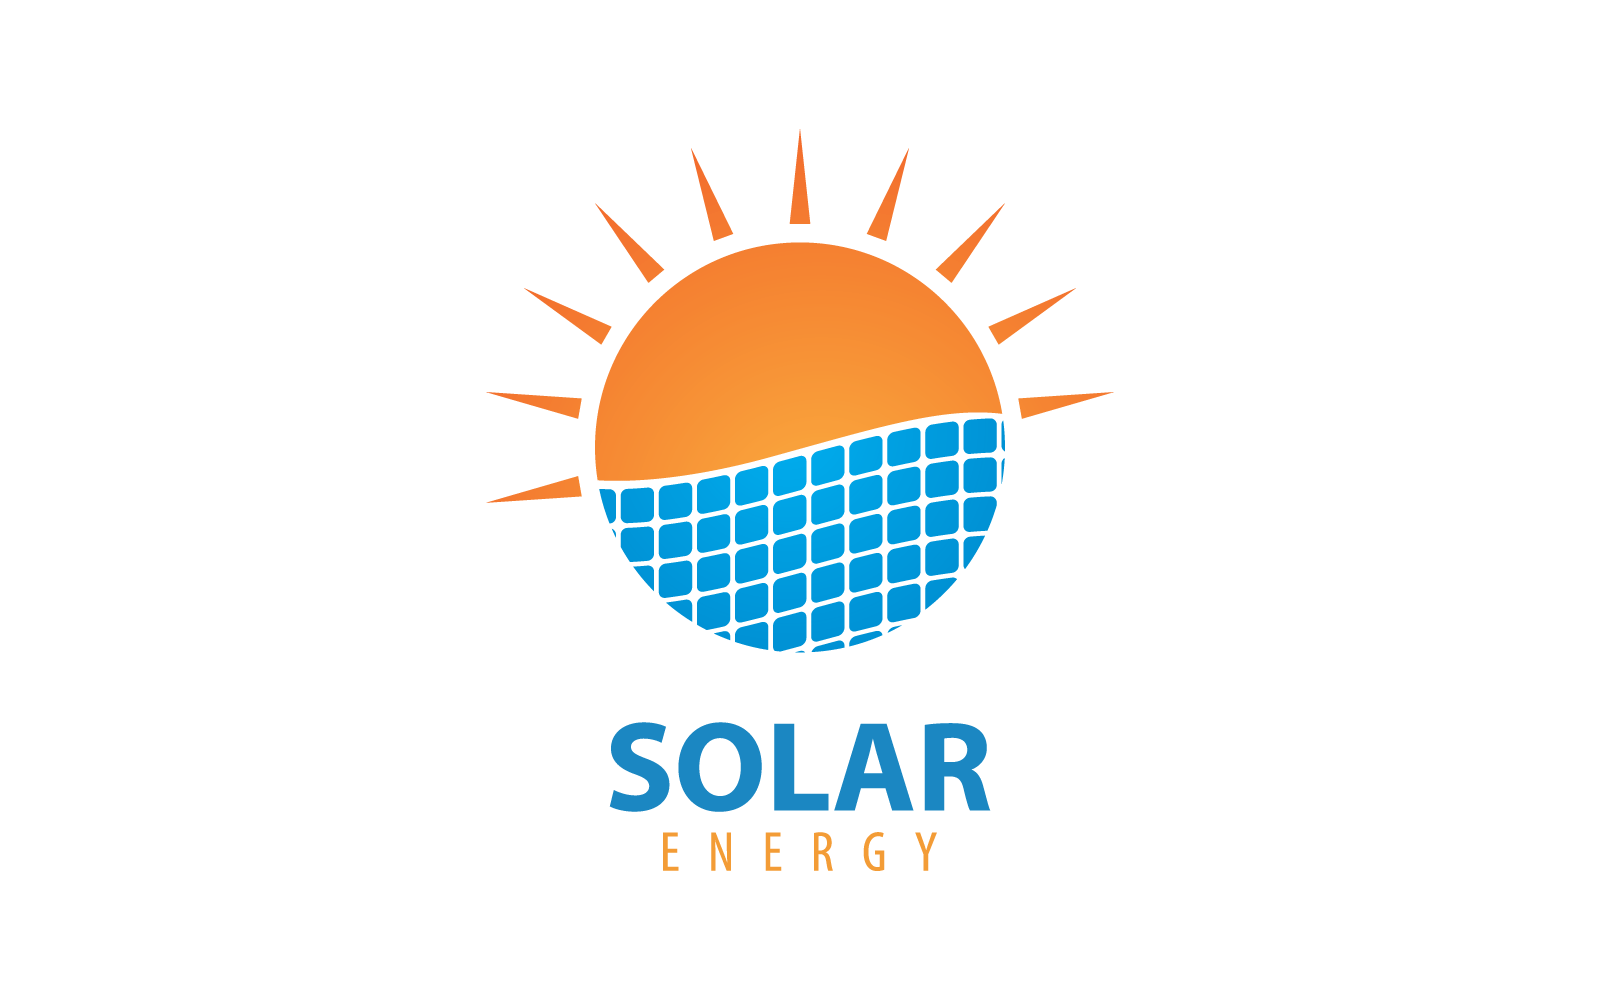 Solar panel logo icon vector flat design template